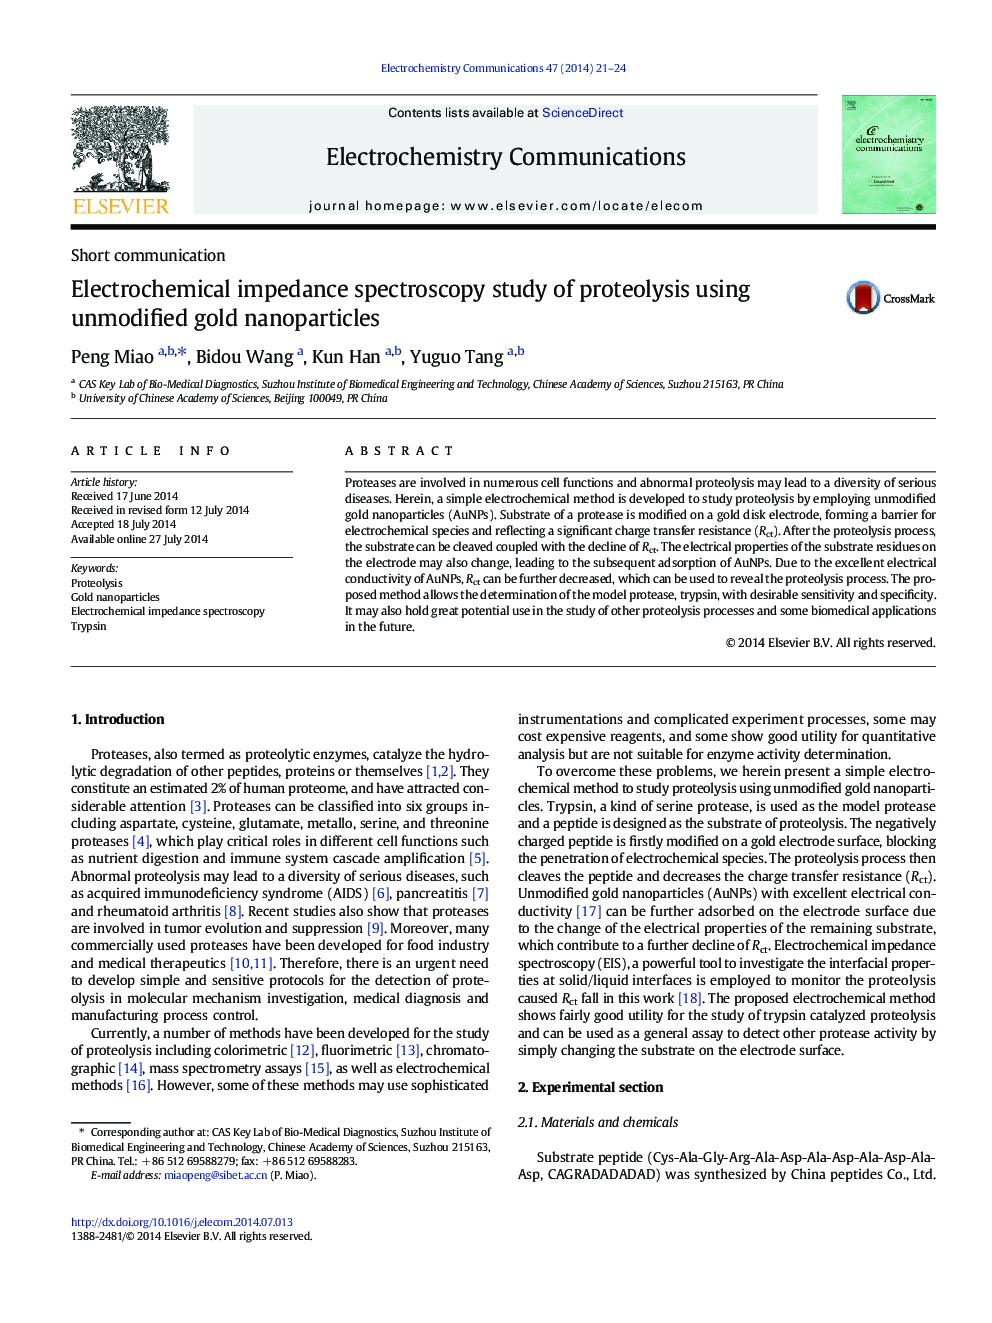 مطالعه طیف سنجی امپدانس الکتروشیمیایی پروتئولیز با استفاده از نانوذرات طلایی بدون تغییرات 